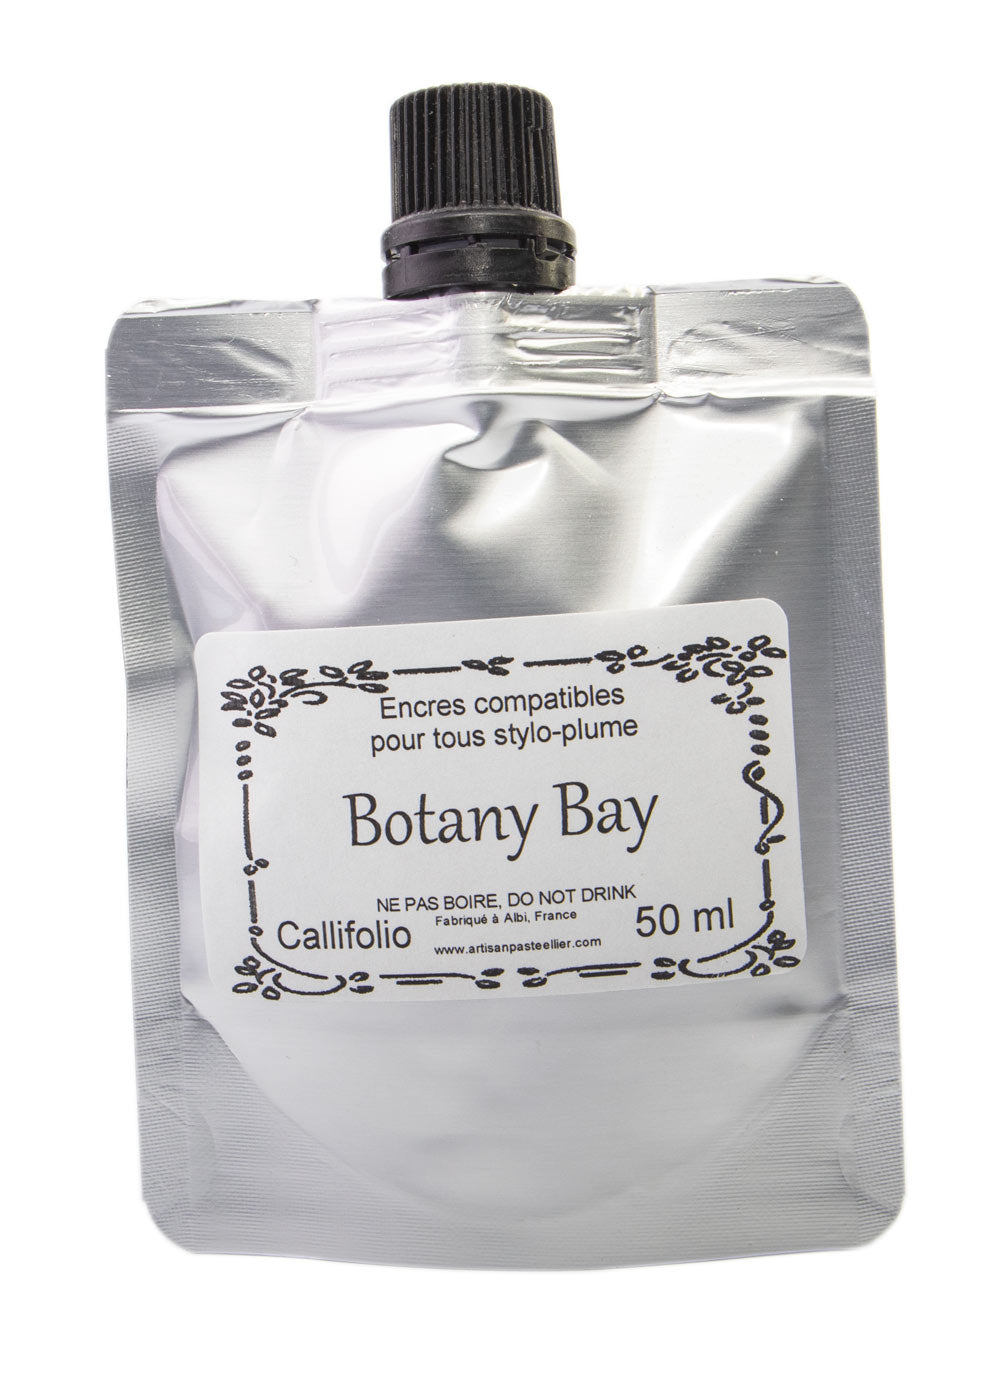 Callifolio Botany Bay